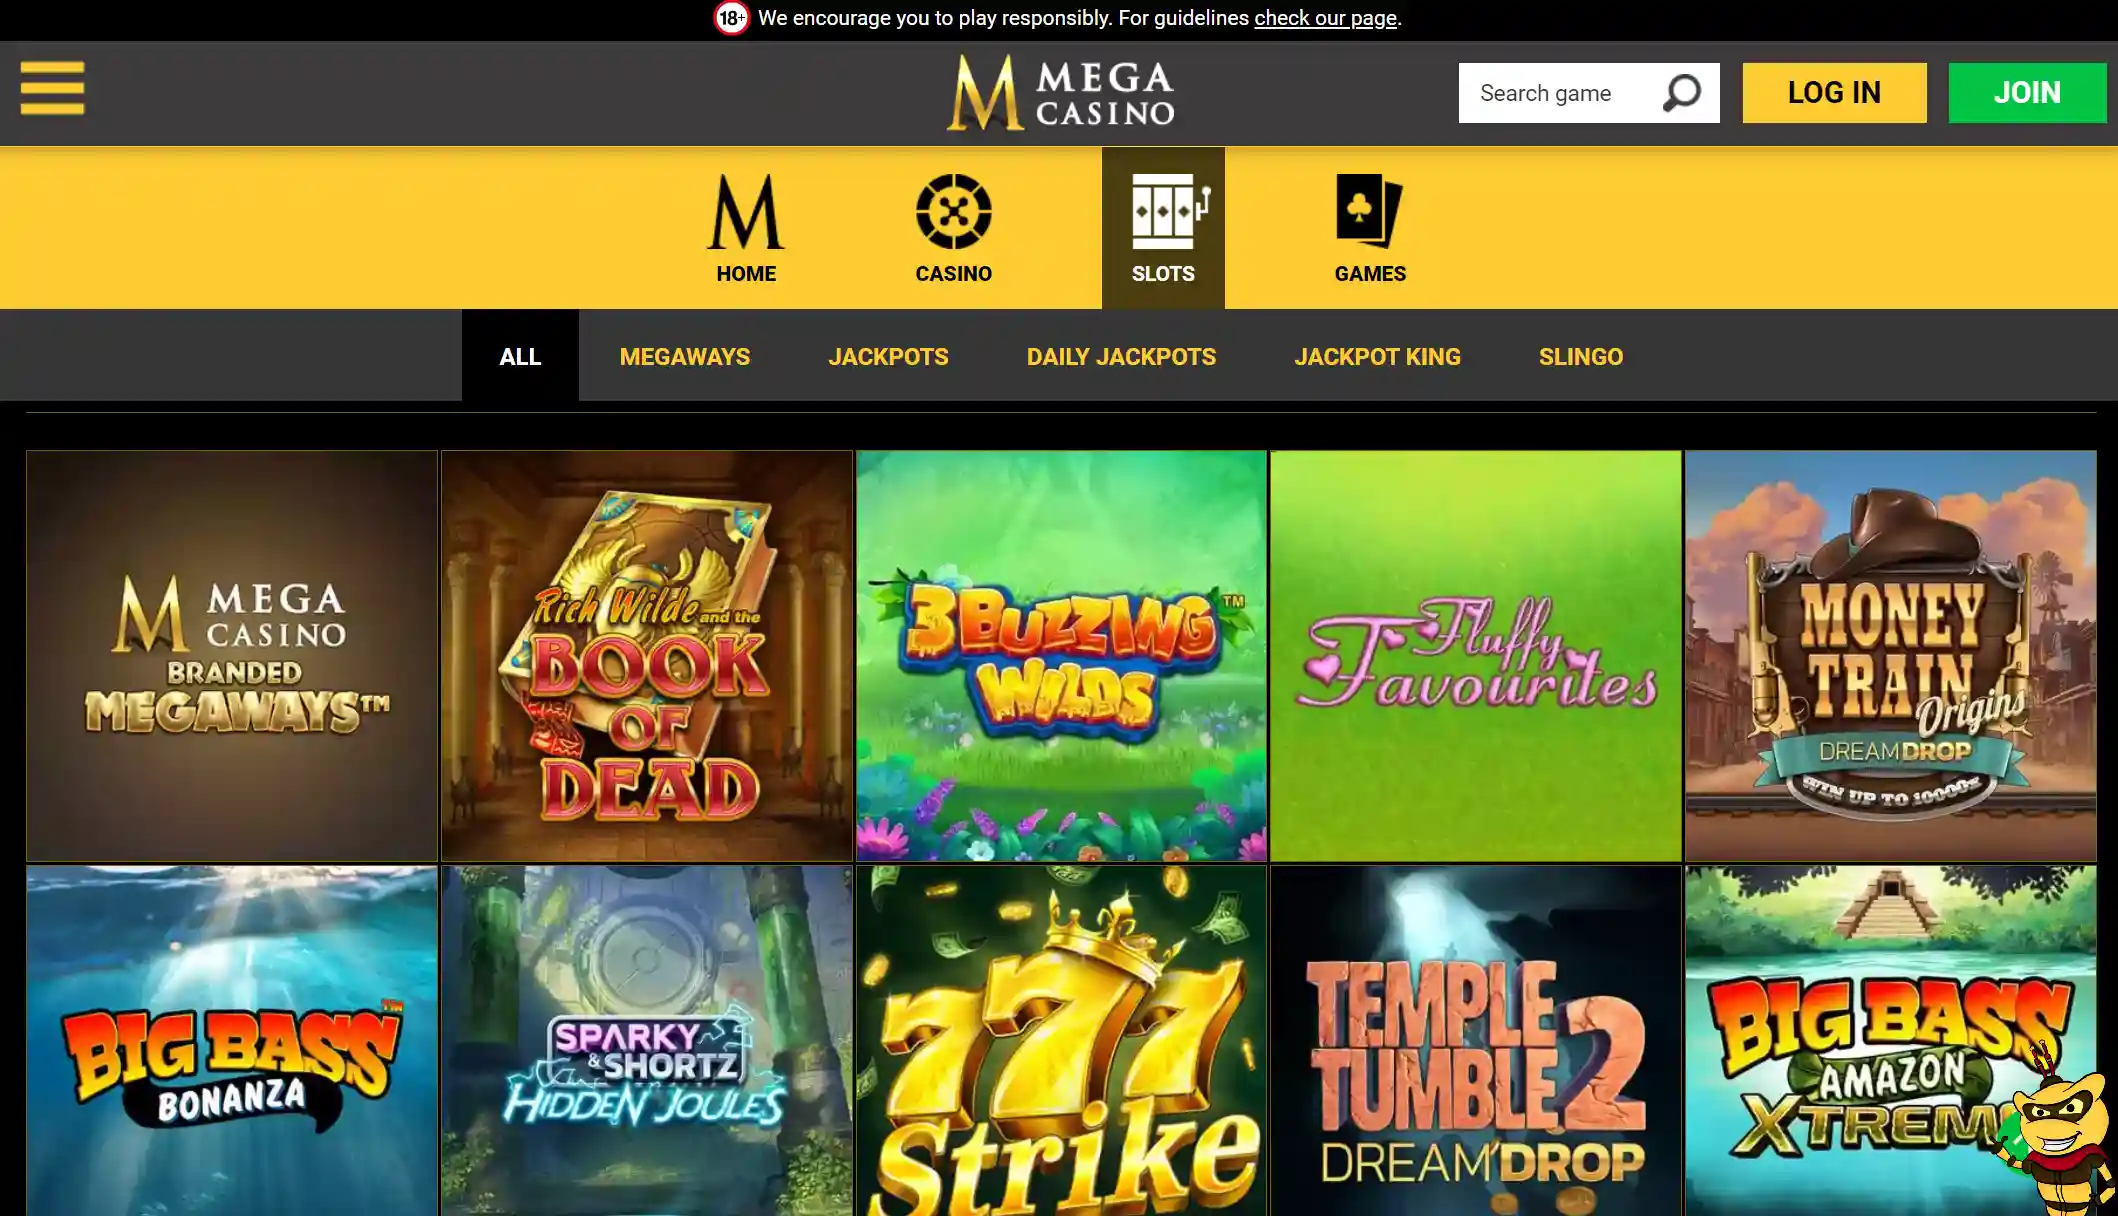 Mega Casino Casino Games
